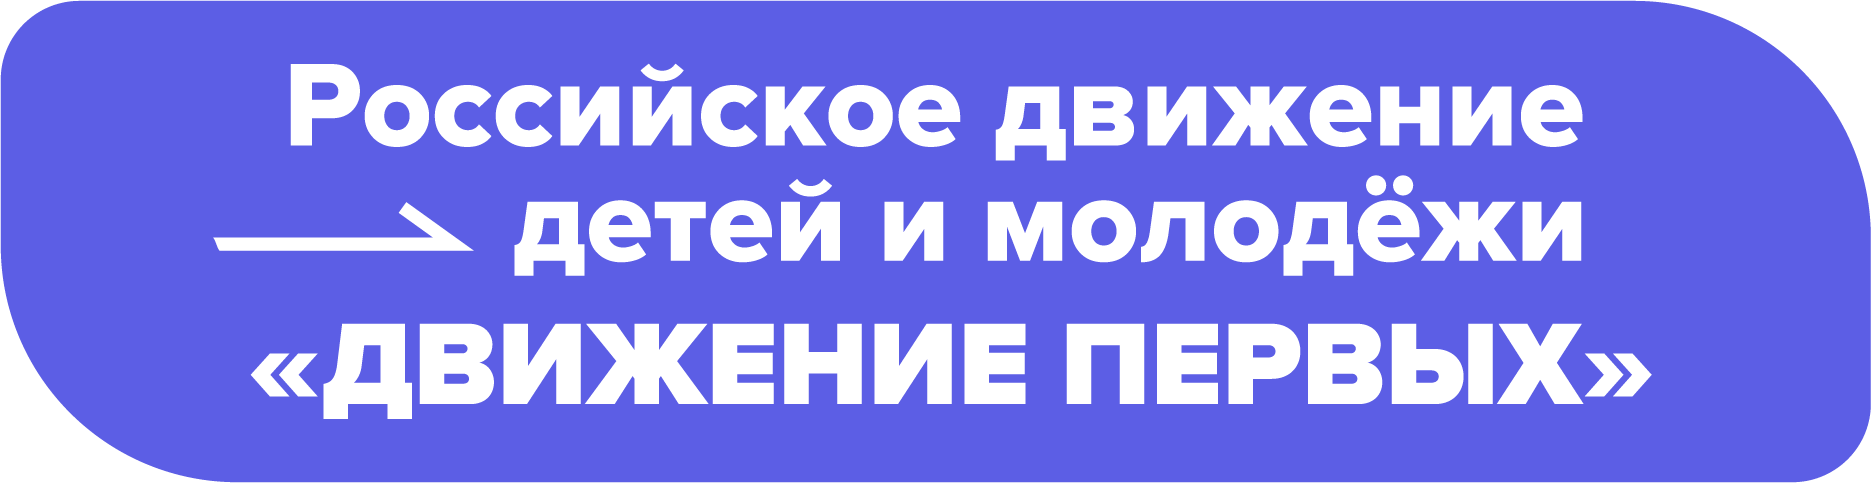 logo_novij_rdddm-02.png (42 KB)